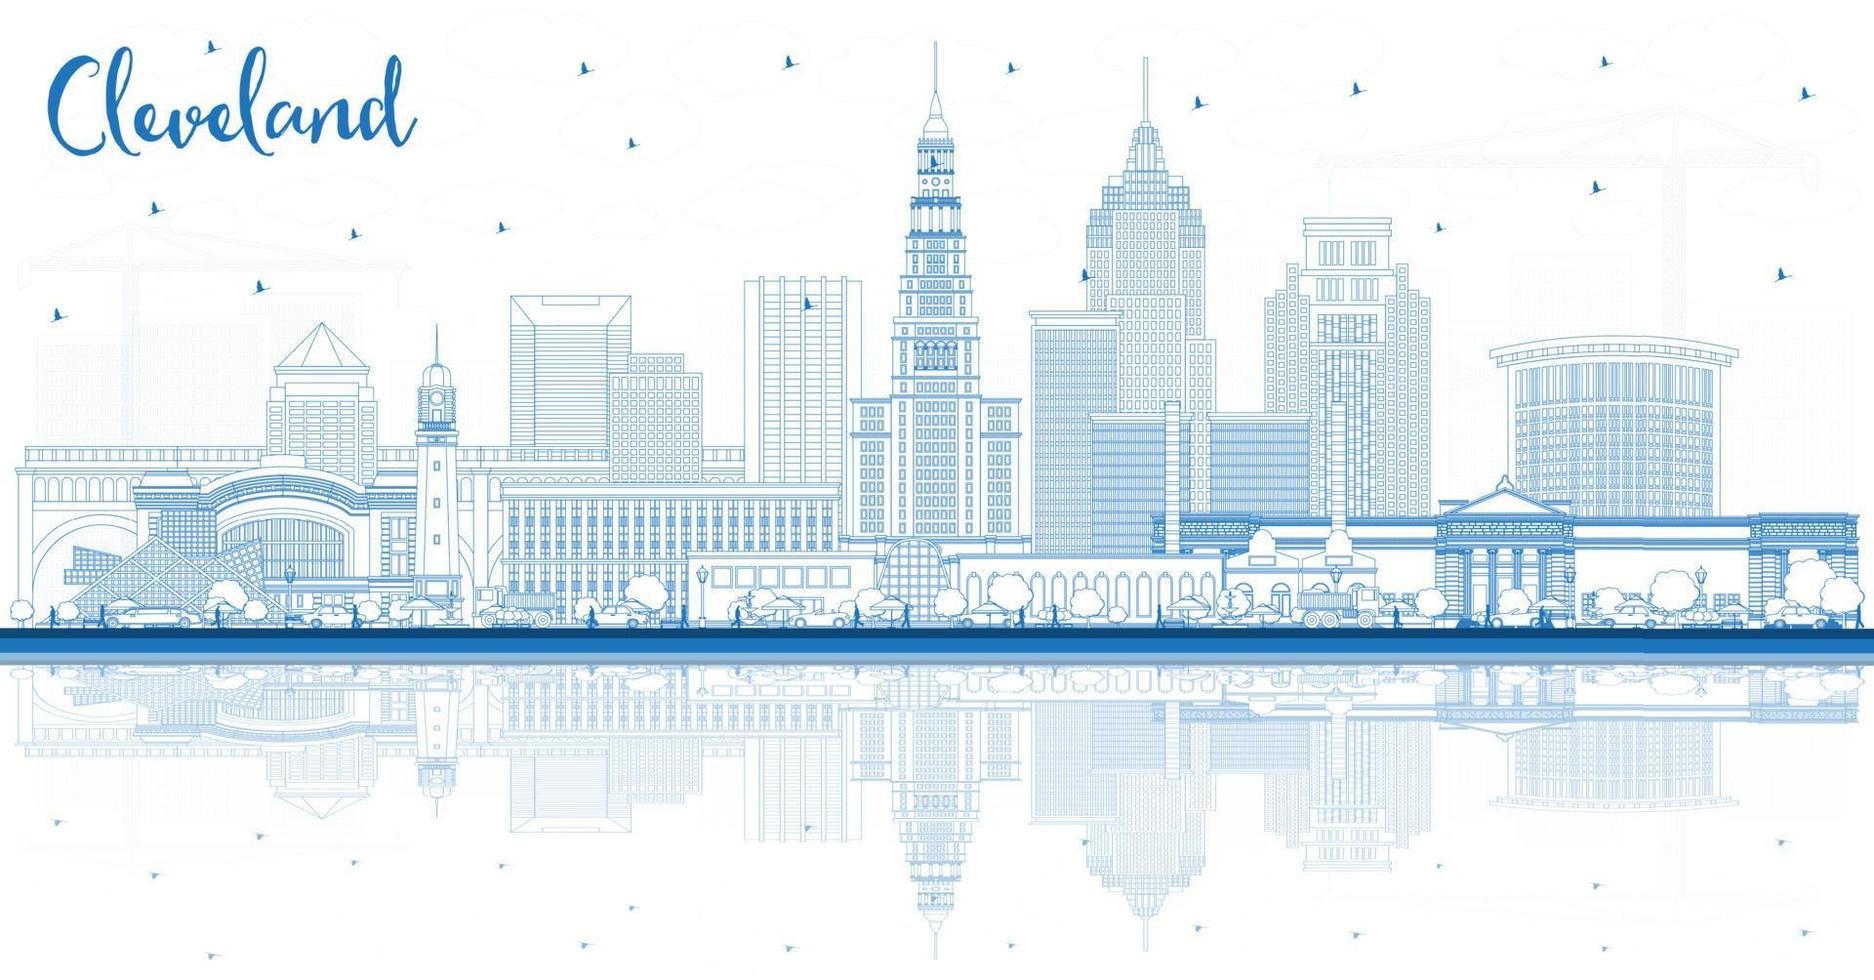 översikt cleveland ohio stad horisont med blå byggnader och reflektioner. vektor illustration. cleveland USA stadsbild med landmärken.